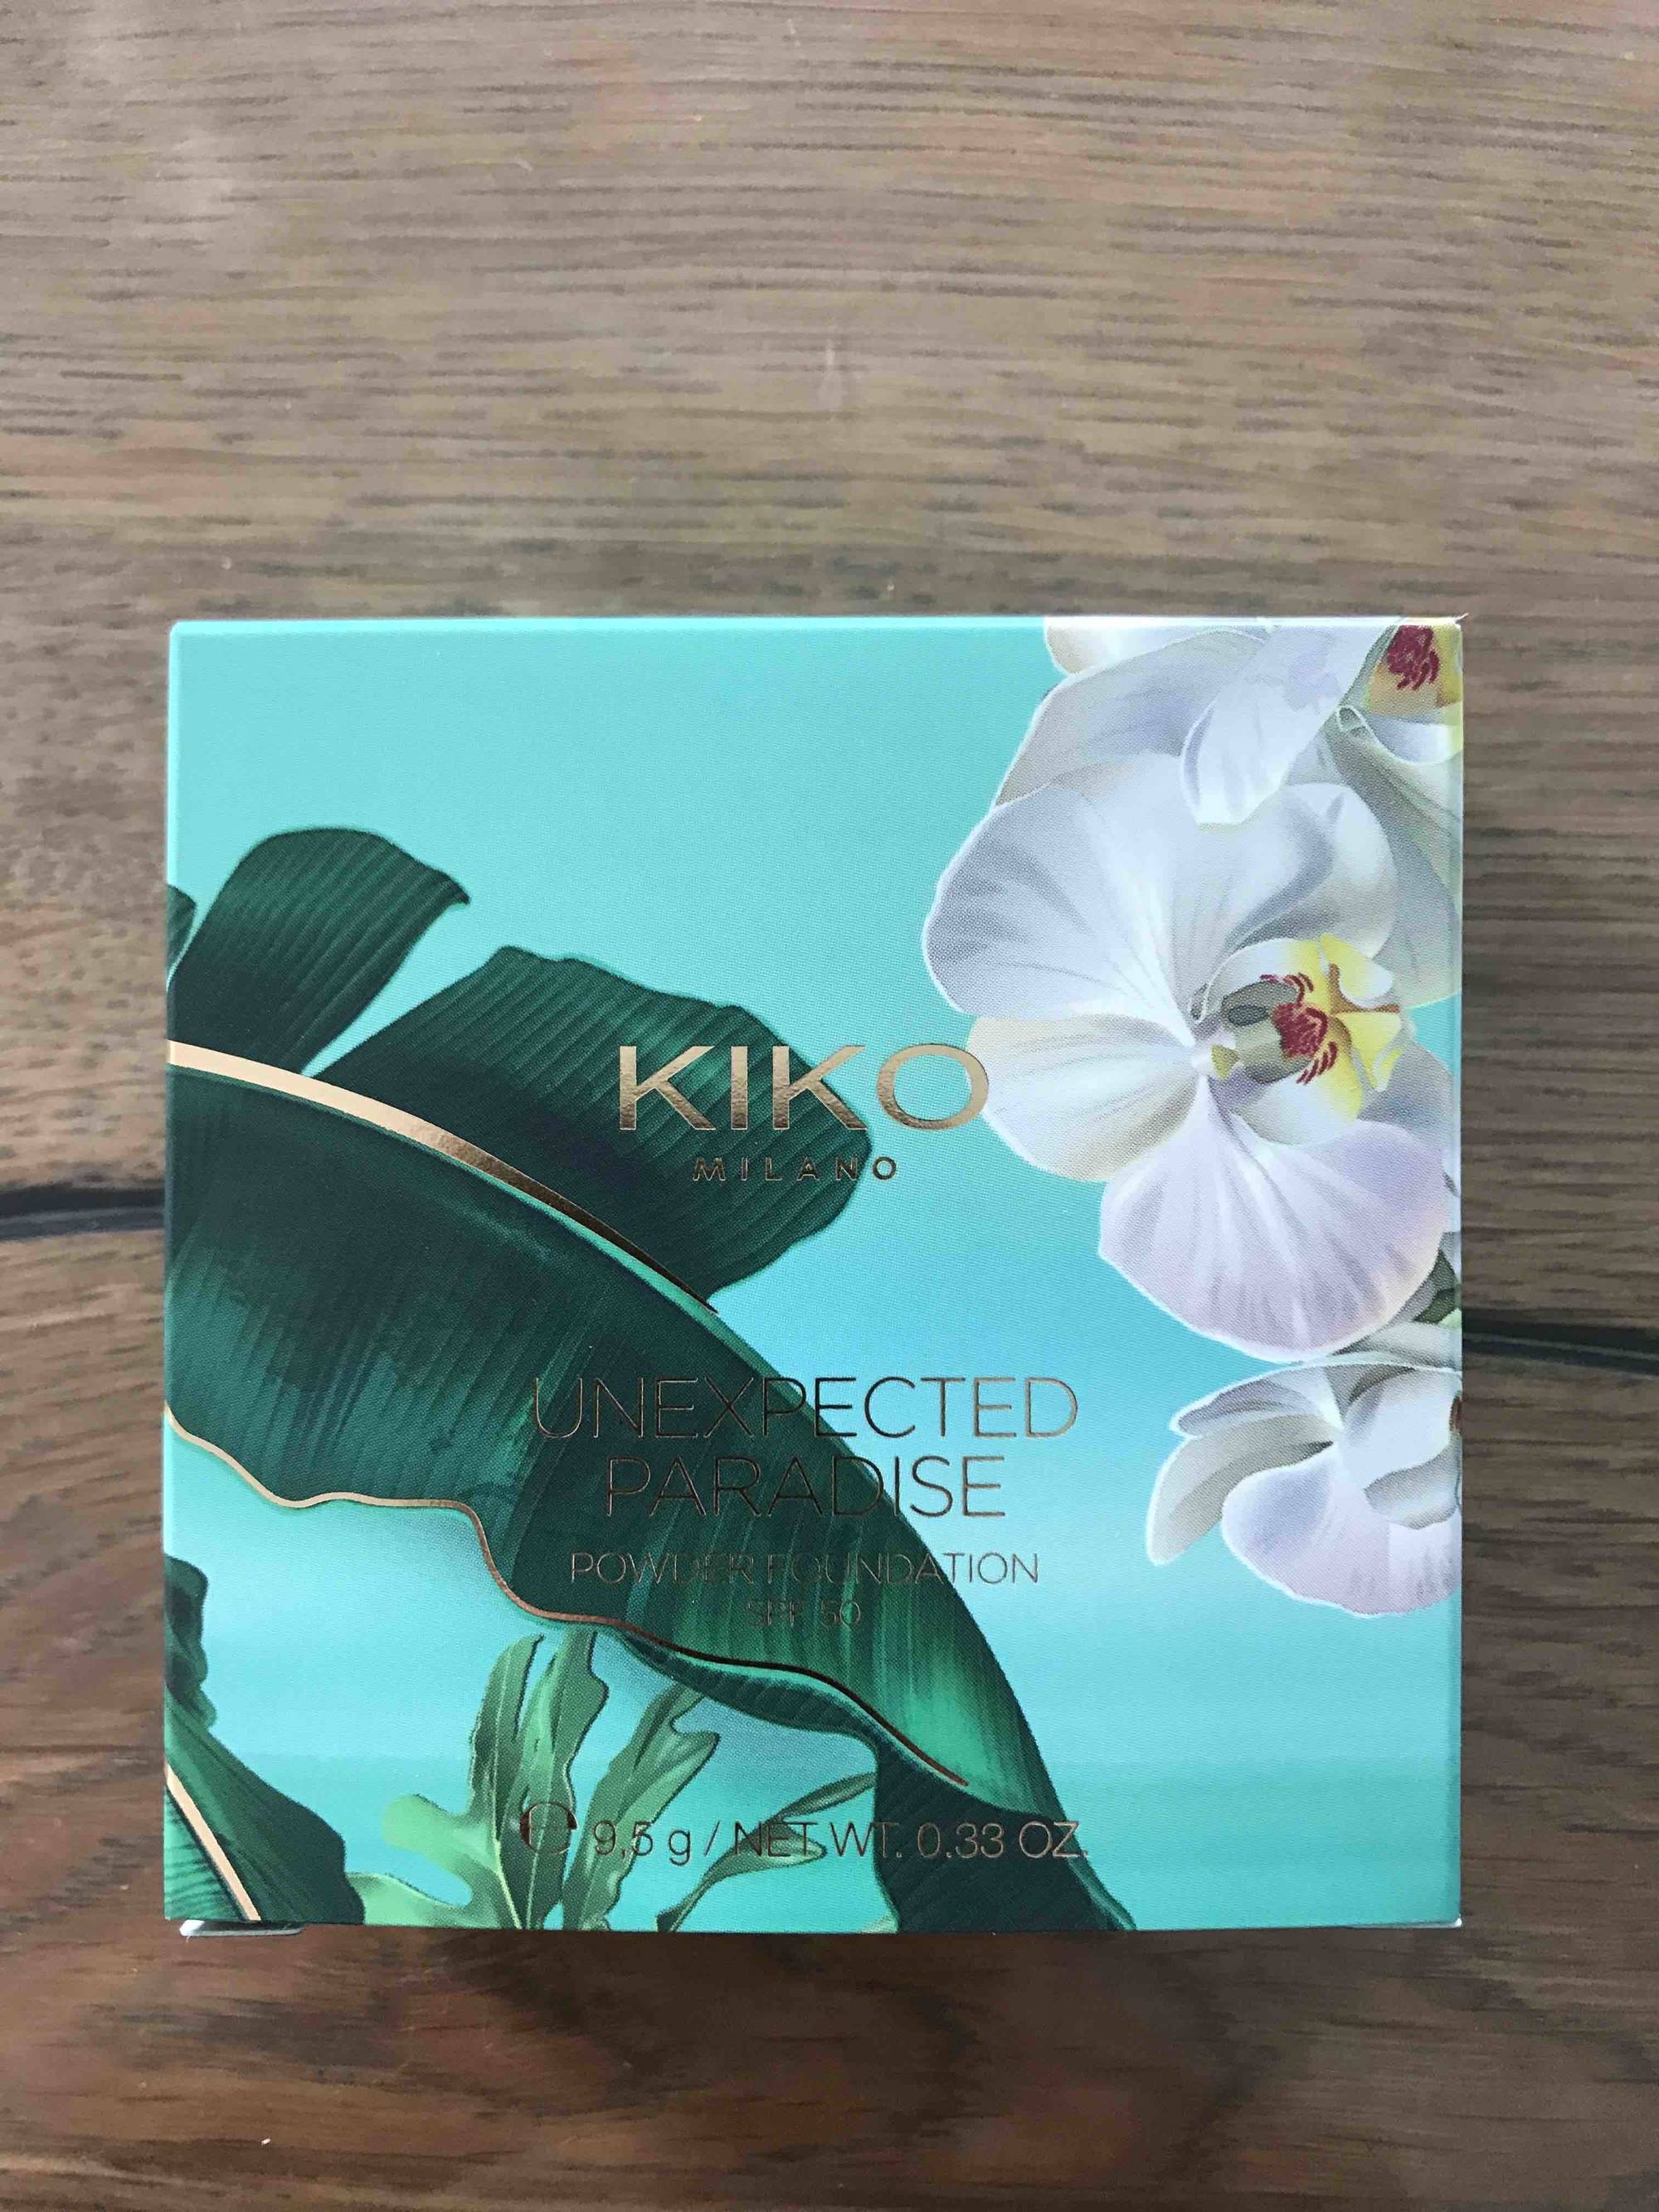 KIKO - Unexpected paradise - Powder foundation SPF 50